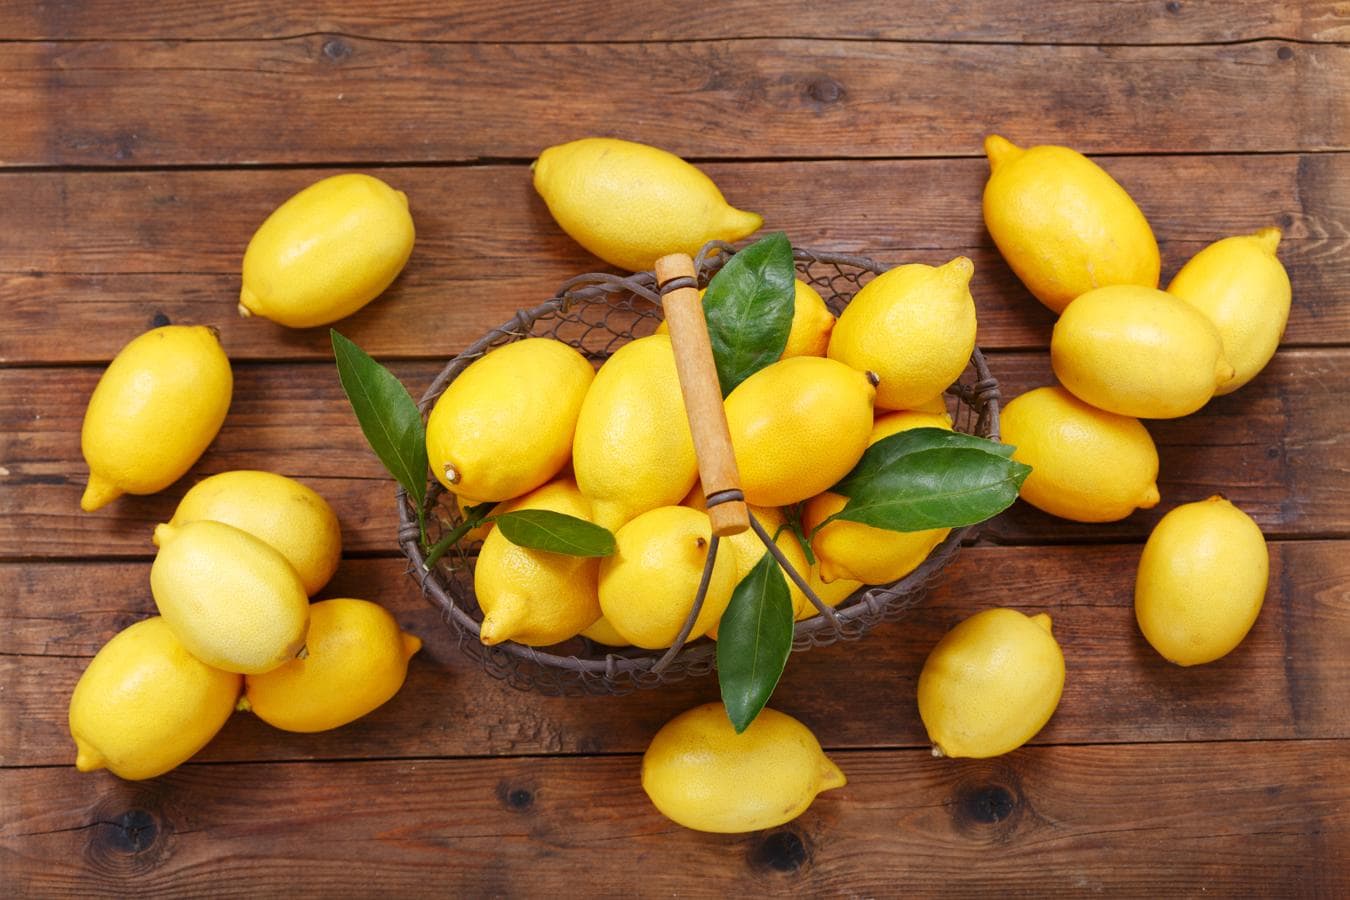 Limón, fuente de vitamina C. Los limones, por su alto contenido en vitamina C (50 mg por cada 100 gramos) y flavonoides, ayudan a reforzar tu sistema inmunológico aumentando las defensas de tu organismo